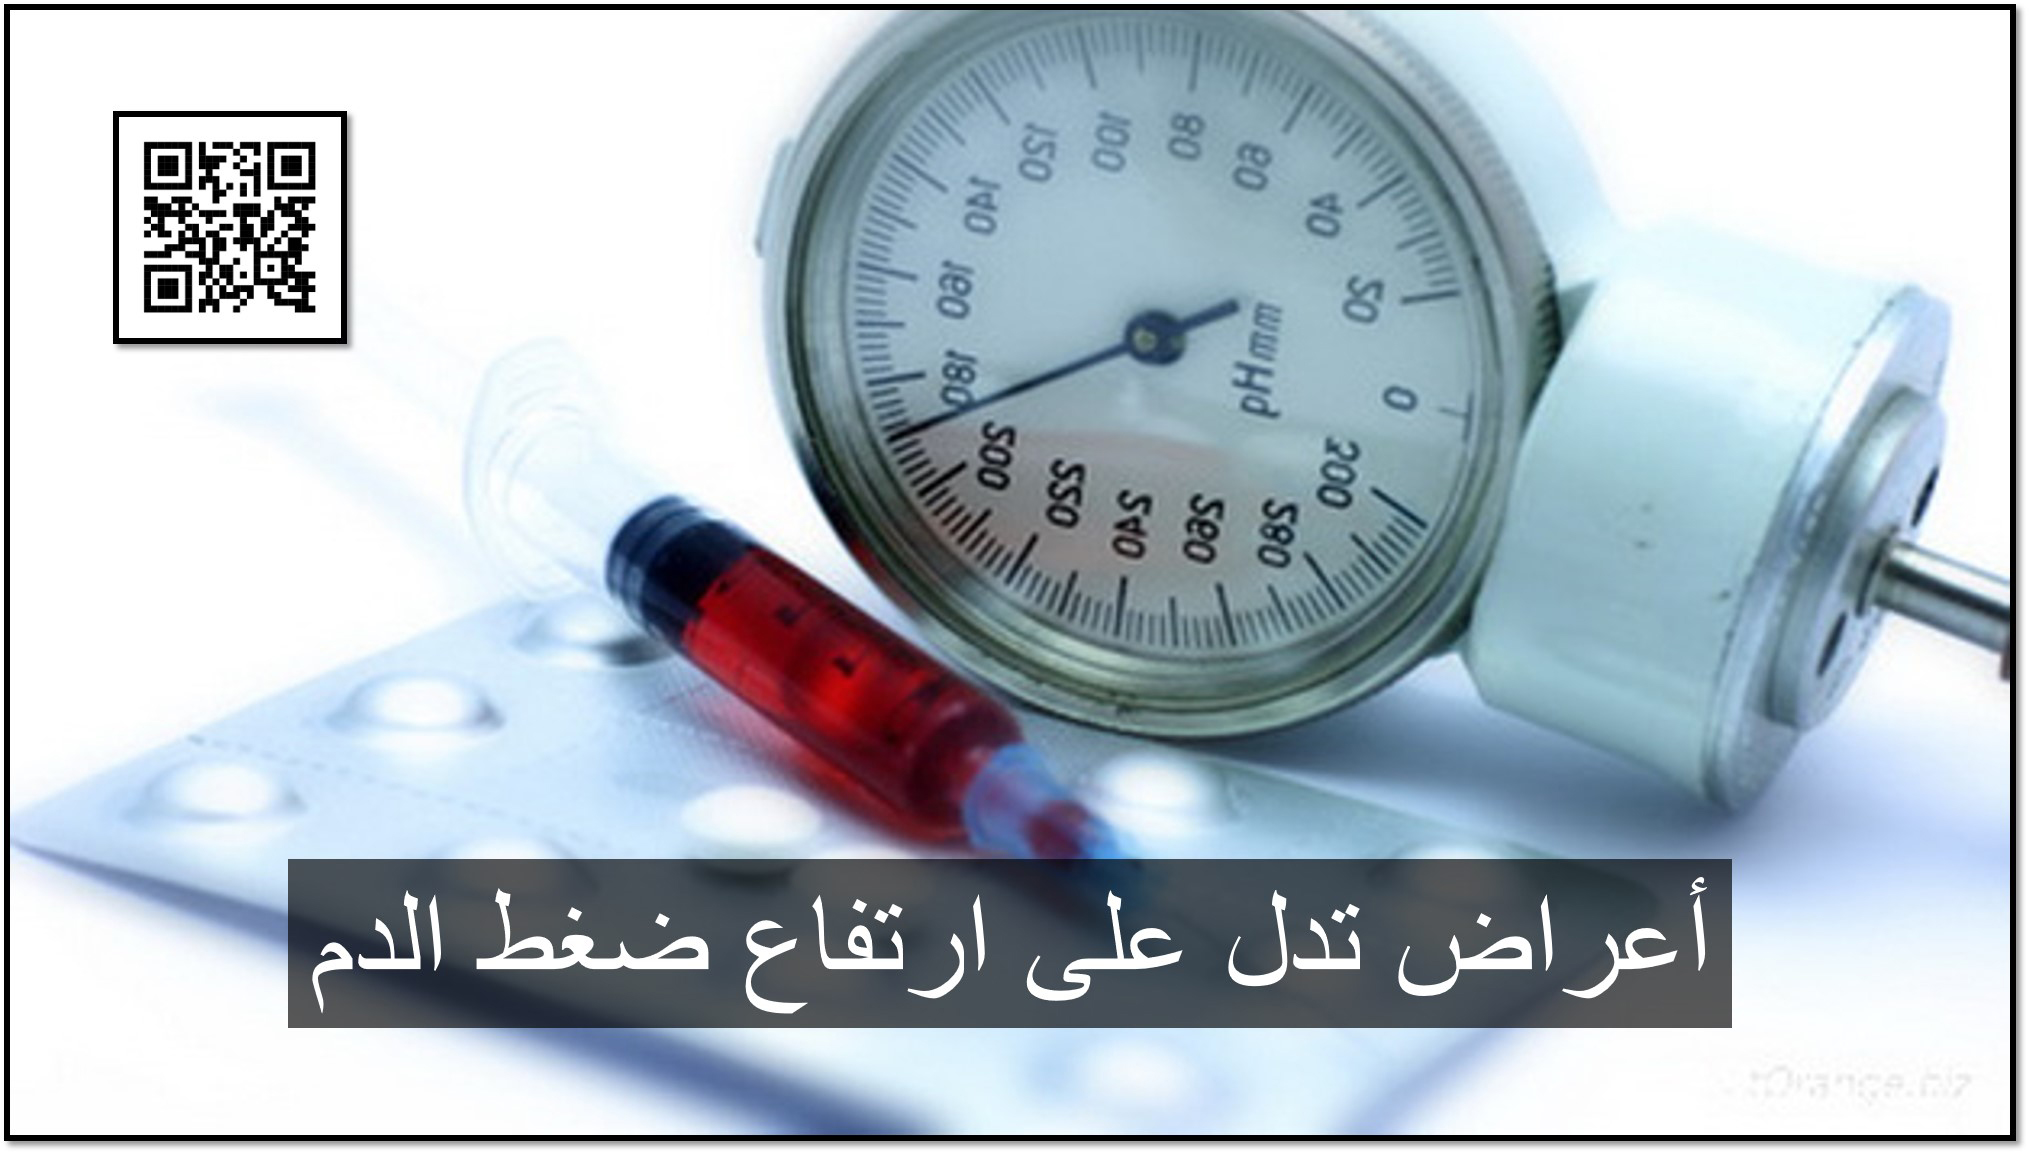 أعراض تدل على ارتفاع ضغط الدم